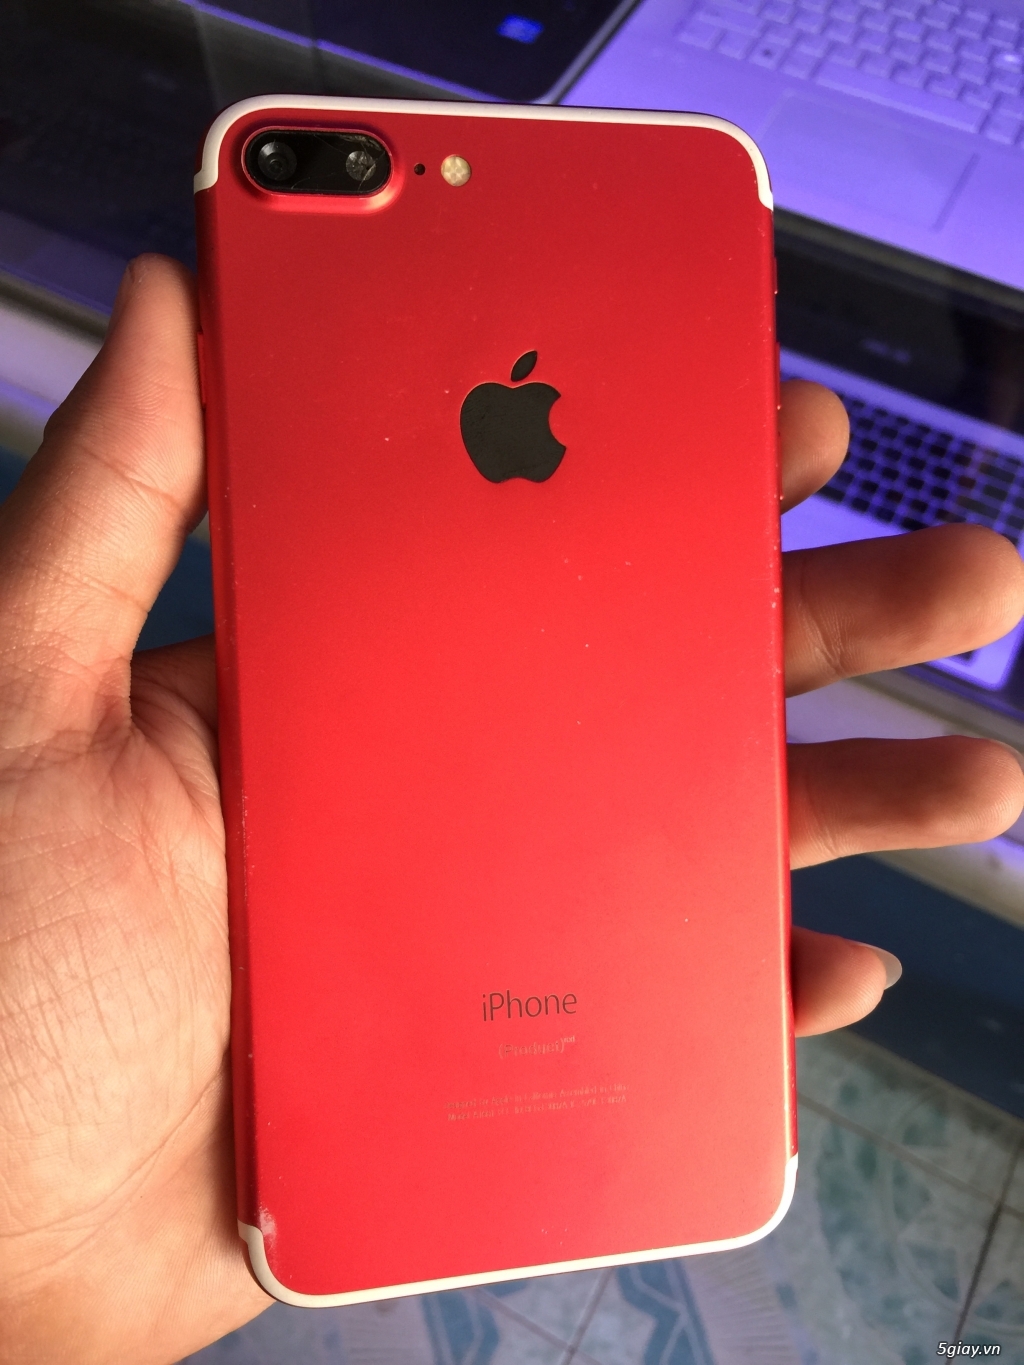 iPhone 7 Plus 32GB màu đỏ, bể màn, còn lên hình, còn cảm ứng